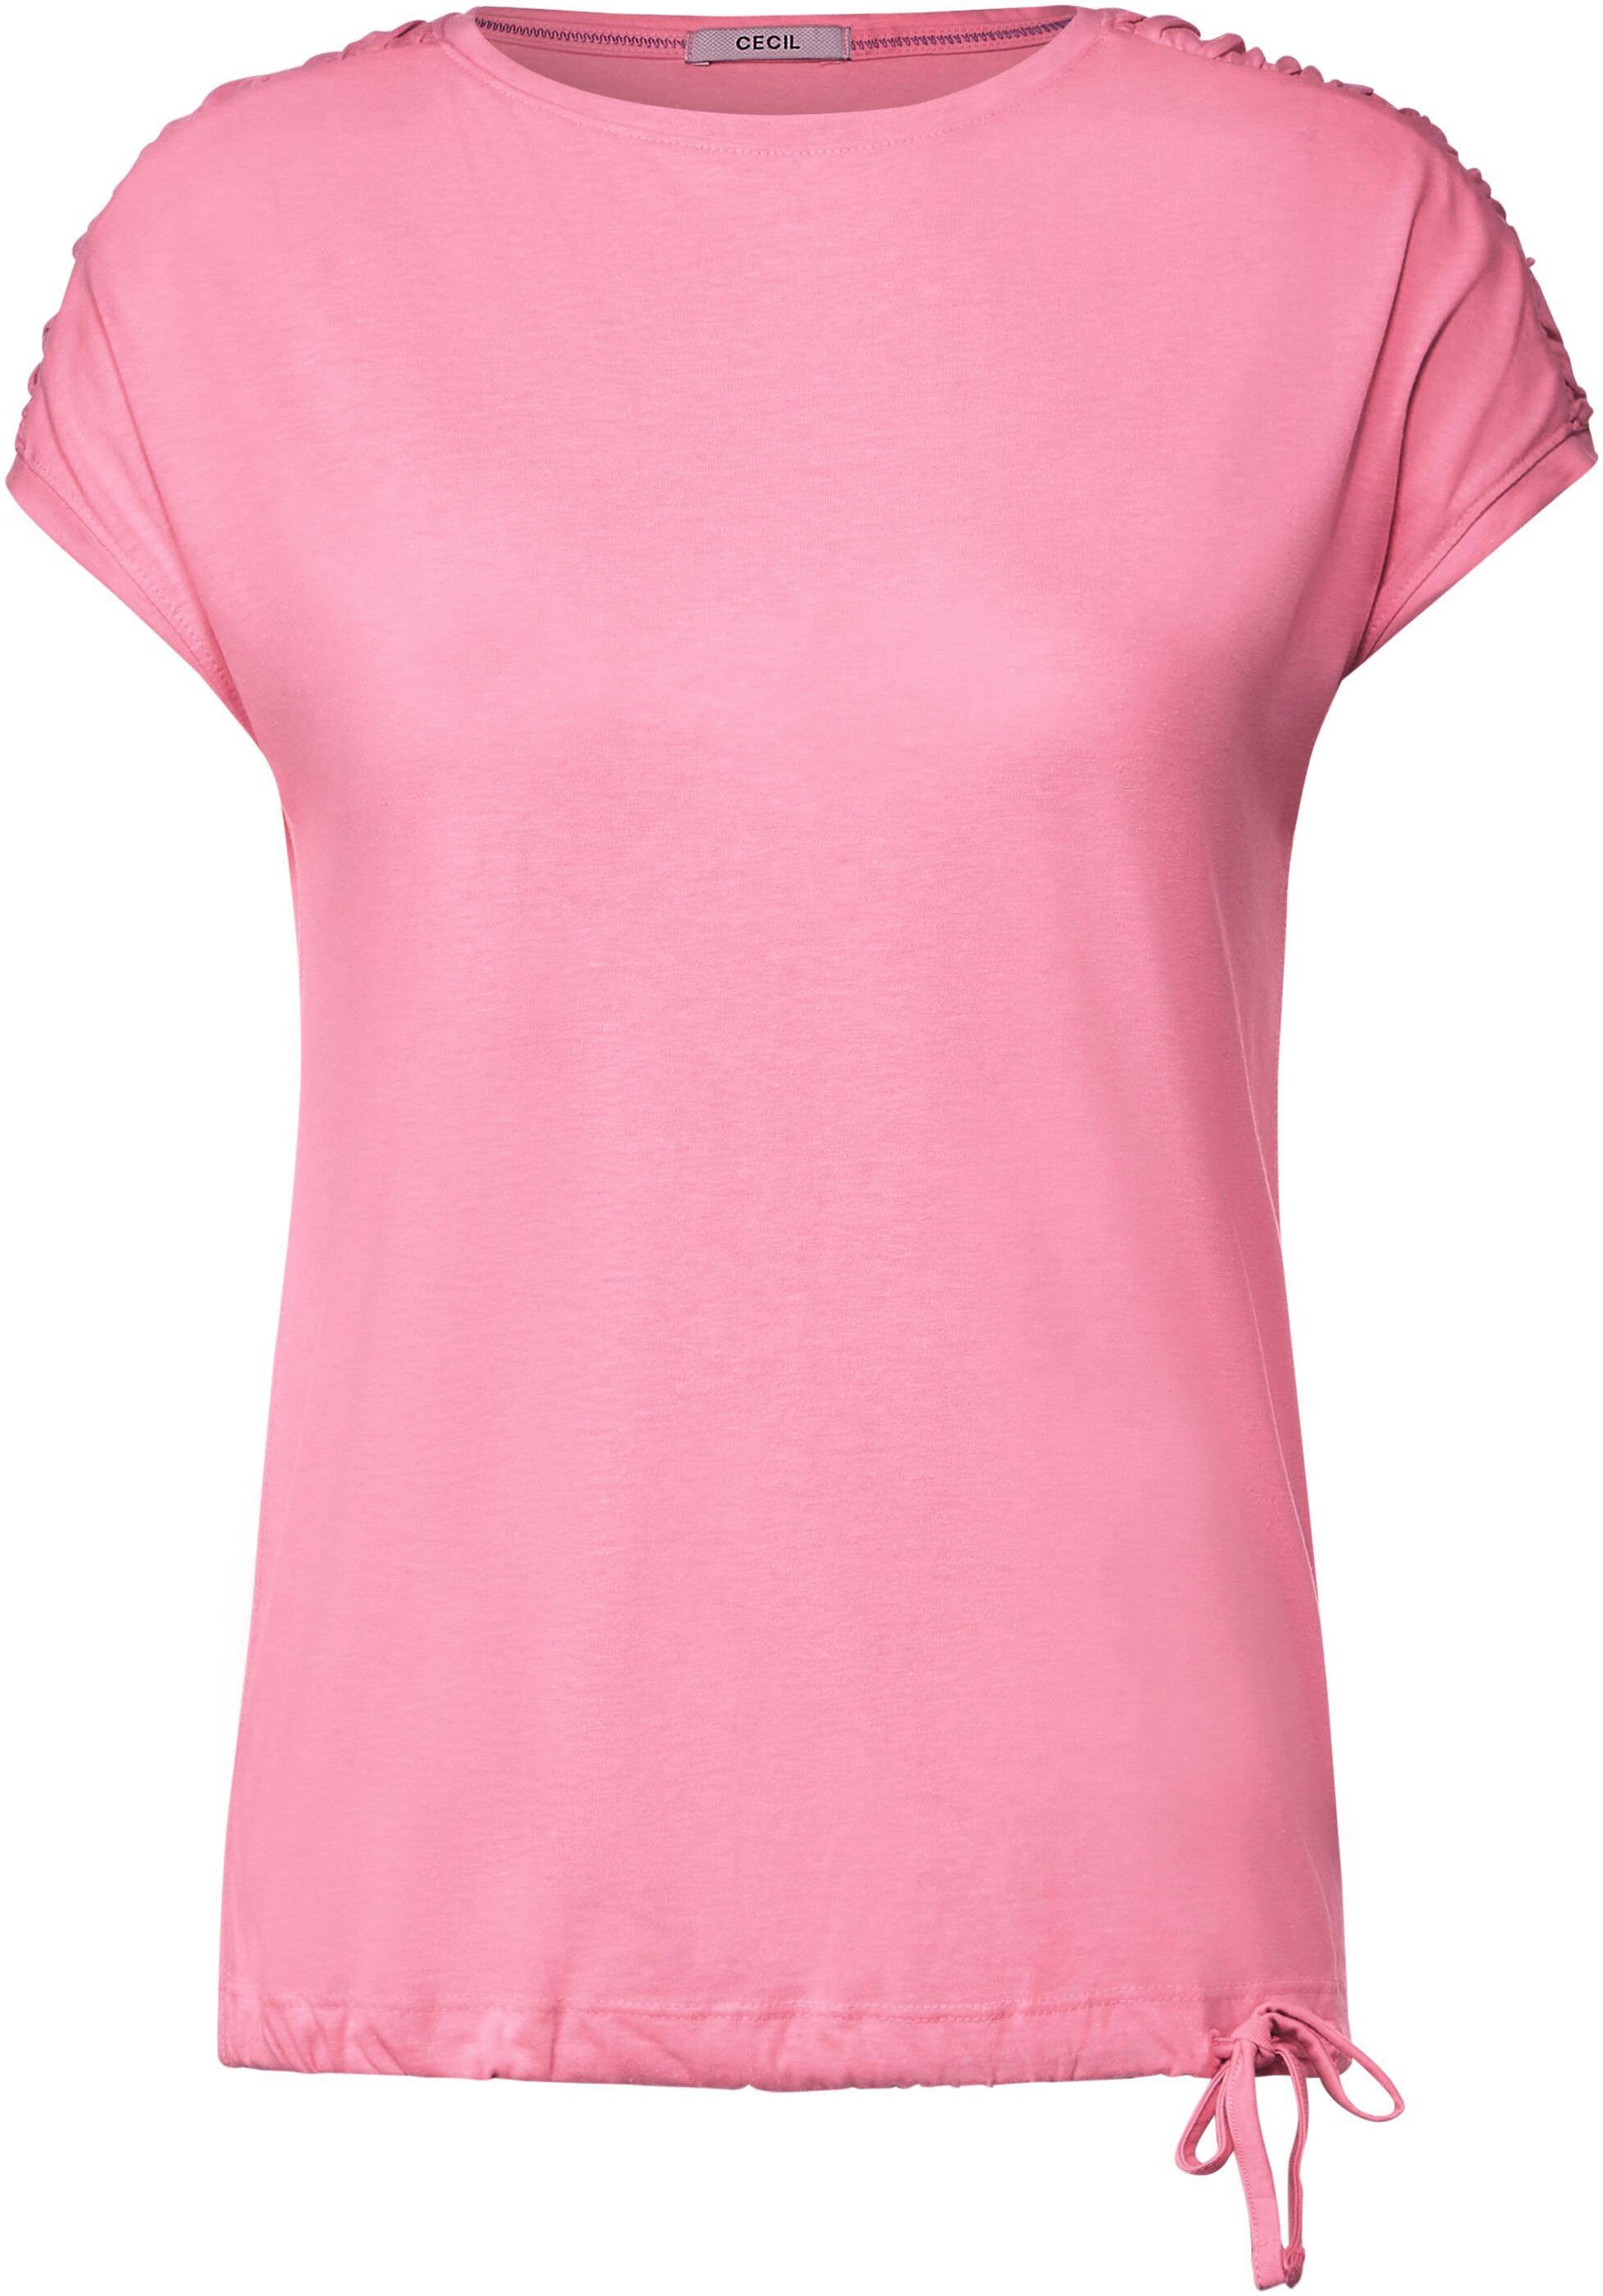 S Cecil NOS Fledermausärmeln Gathering pink soft mit T-Shirt Shoulder